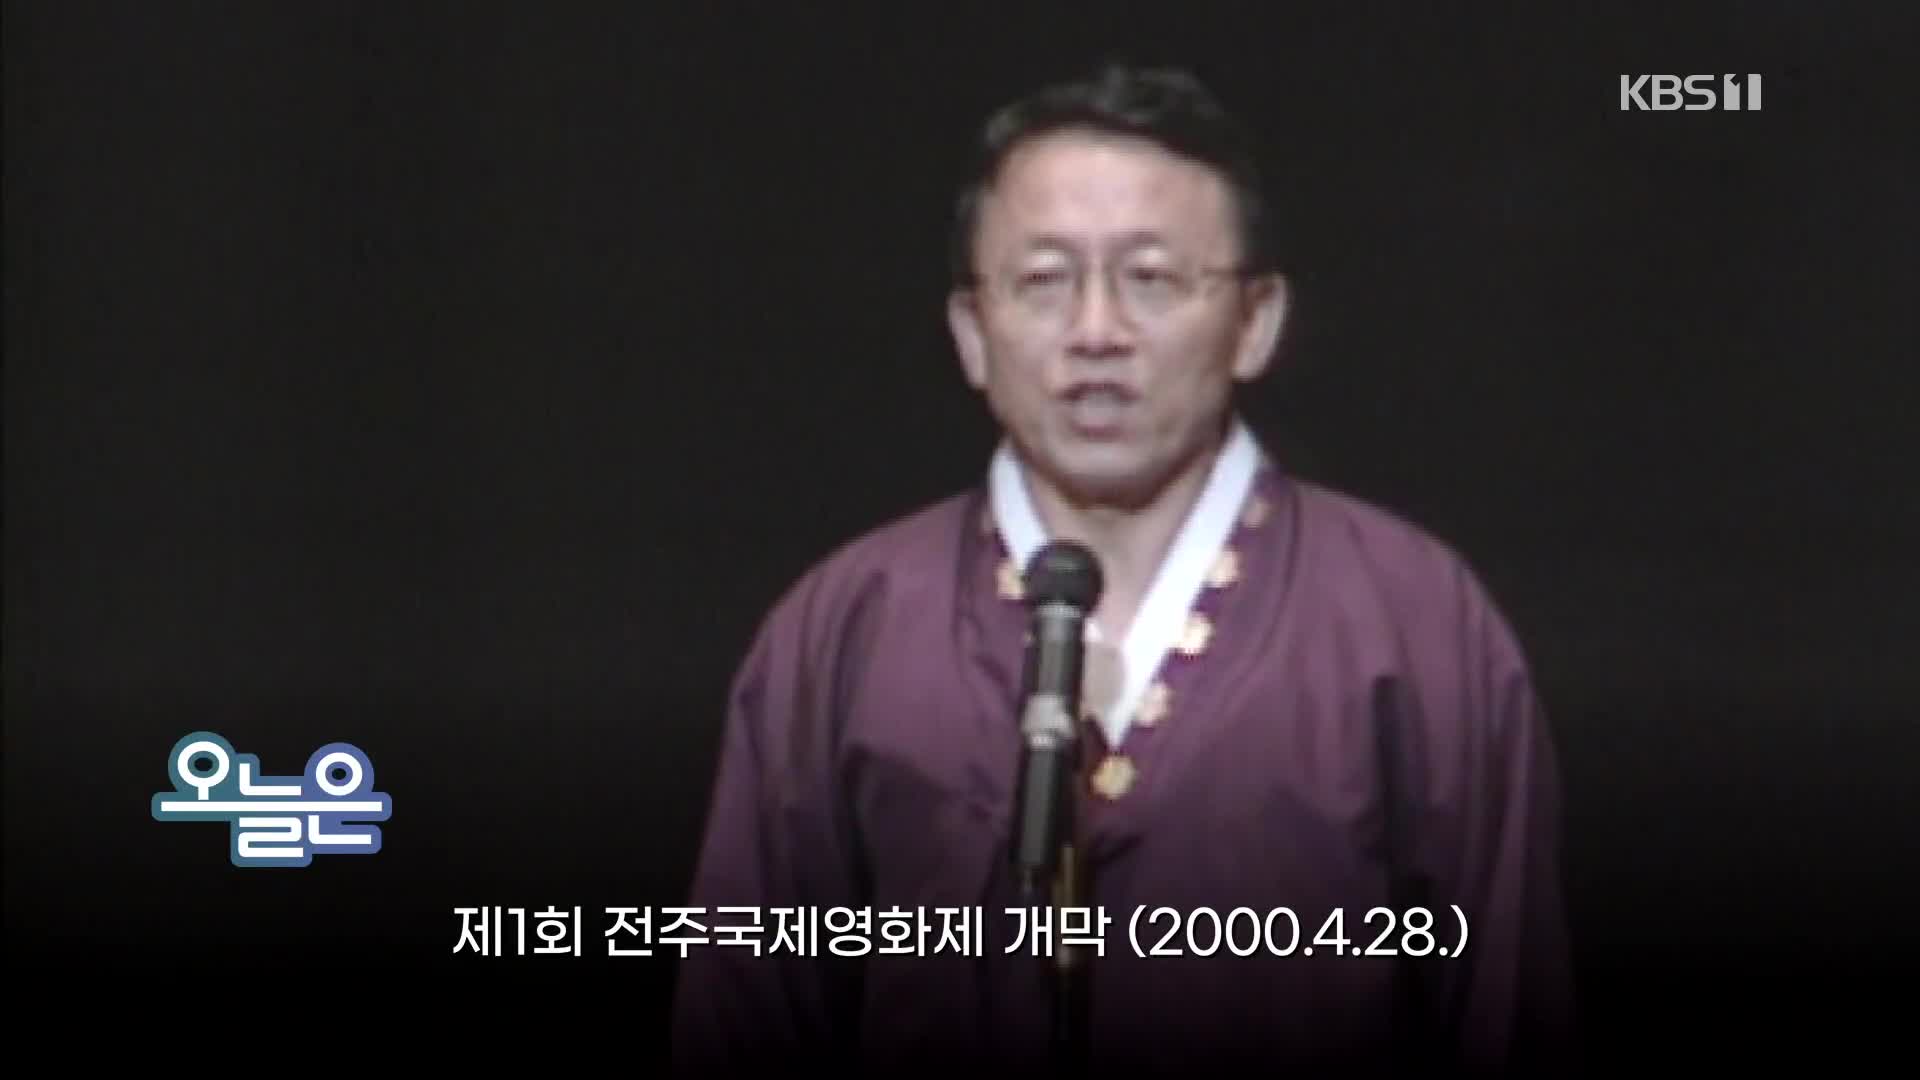 [오늘은] 제1회 전주국제영화제 개막 (2000.4.28.)